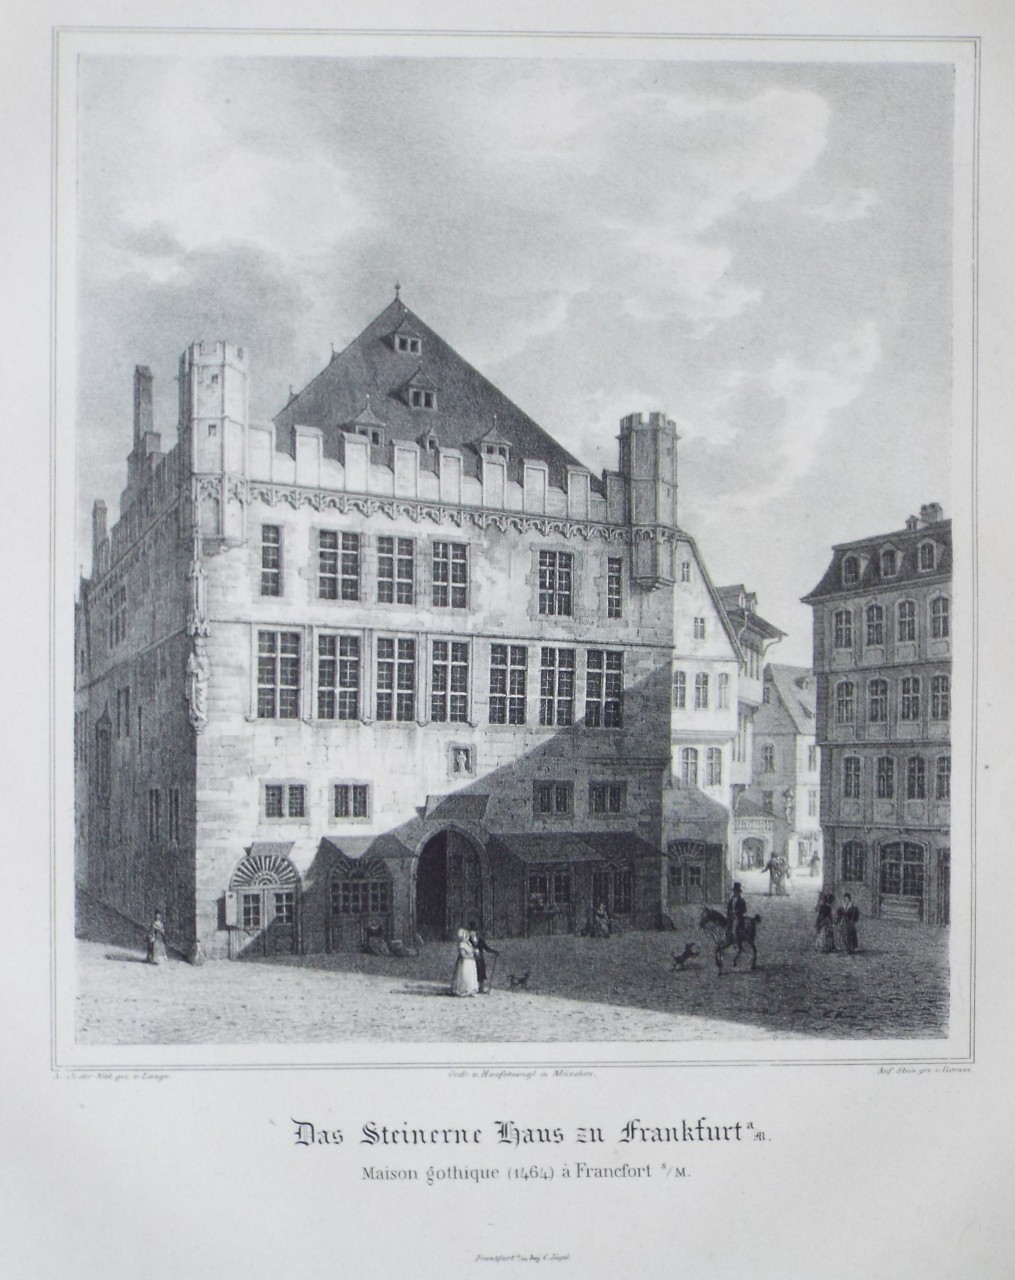 Lithograph - Das Steinerne Haus in Frankfurt a/m.
Maison gothique (1464) a Francfort s/m. - 